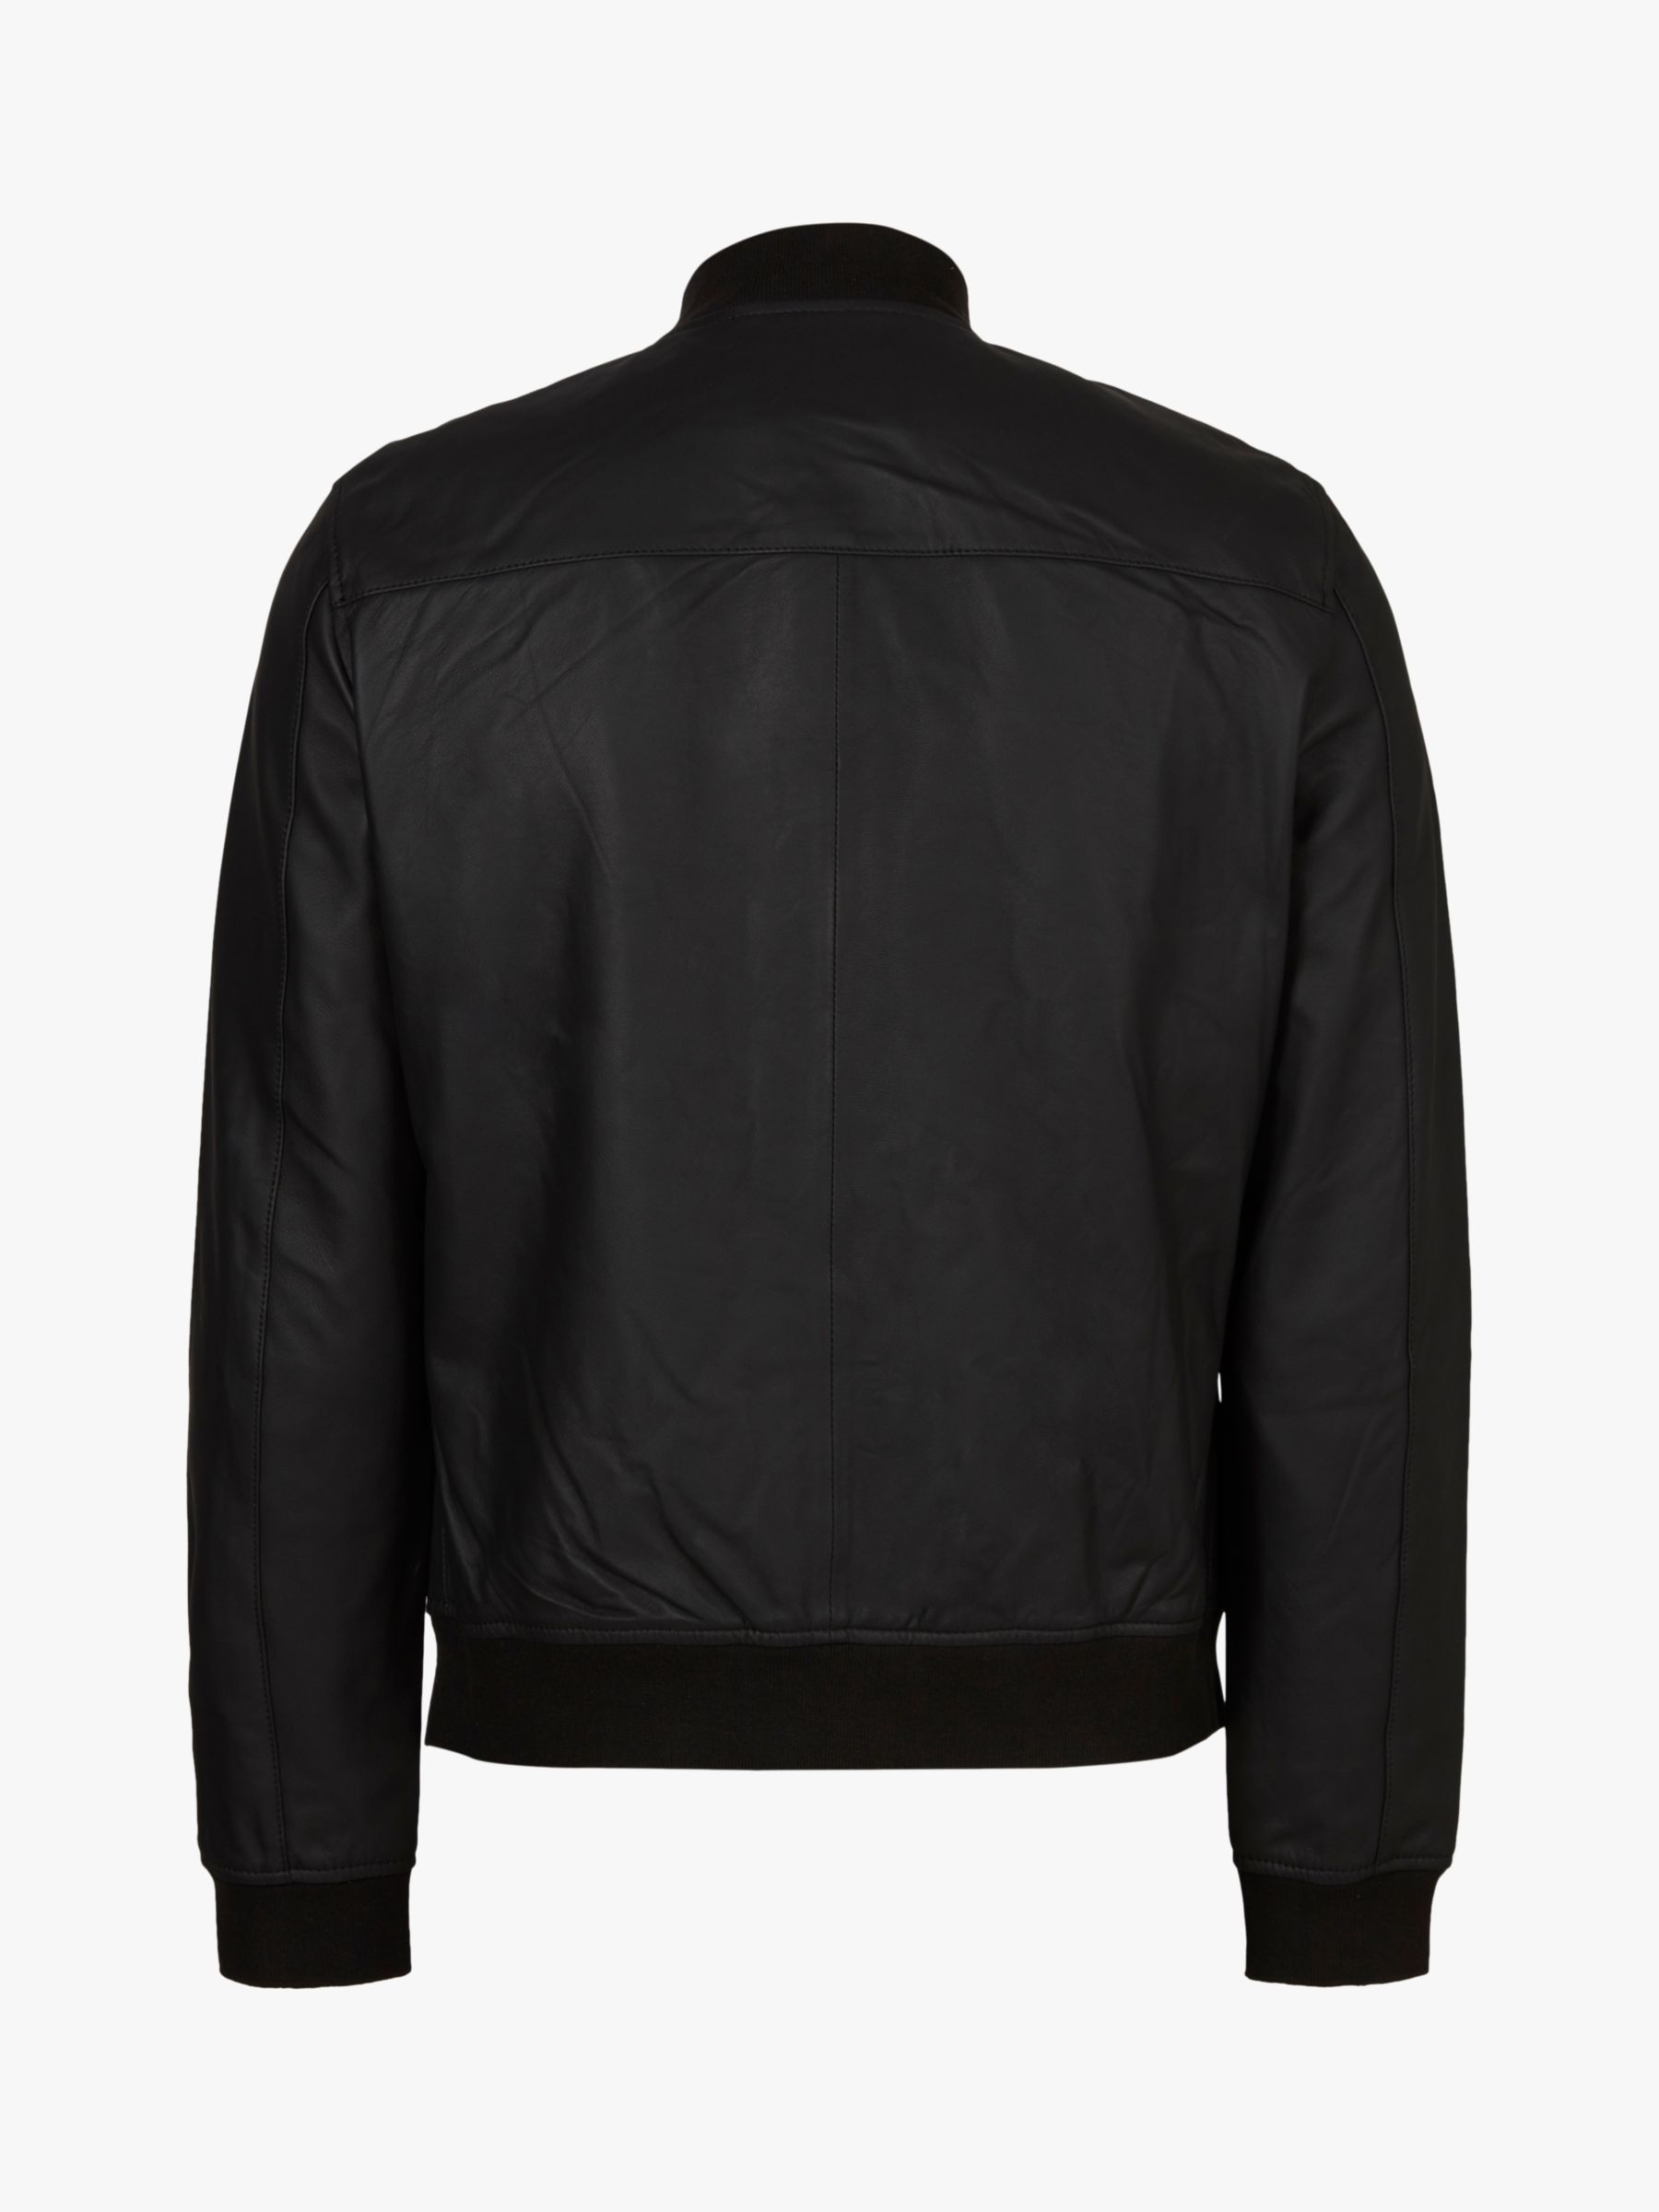 AllSaints Ivor Leather Bomber Jacket, Black